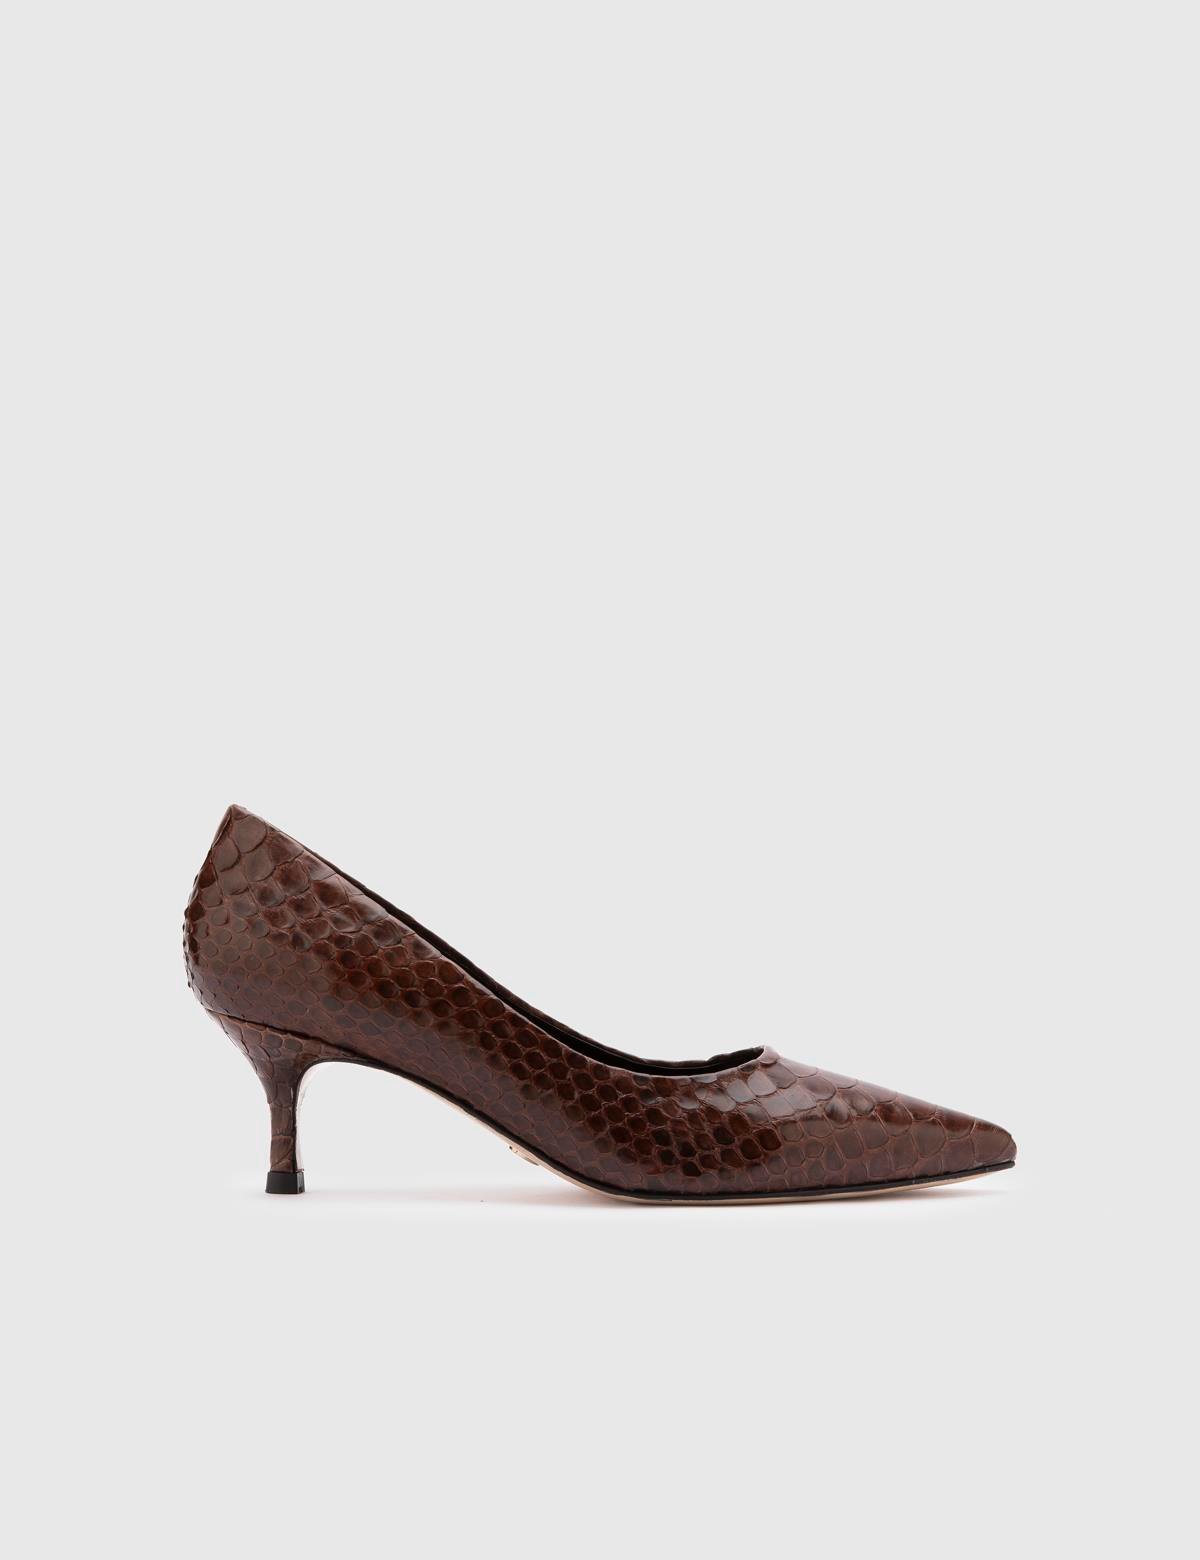 Sarh Hakiki Yılan Deri Kadın Kahverengi Topuklu Ayakkabı - iLVi